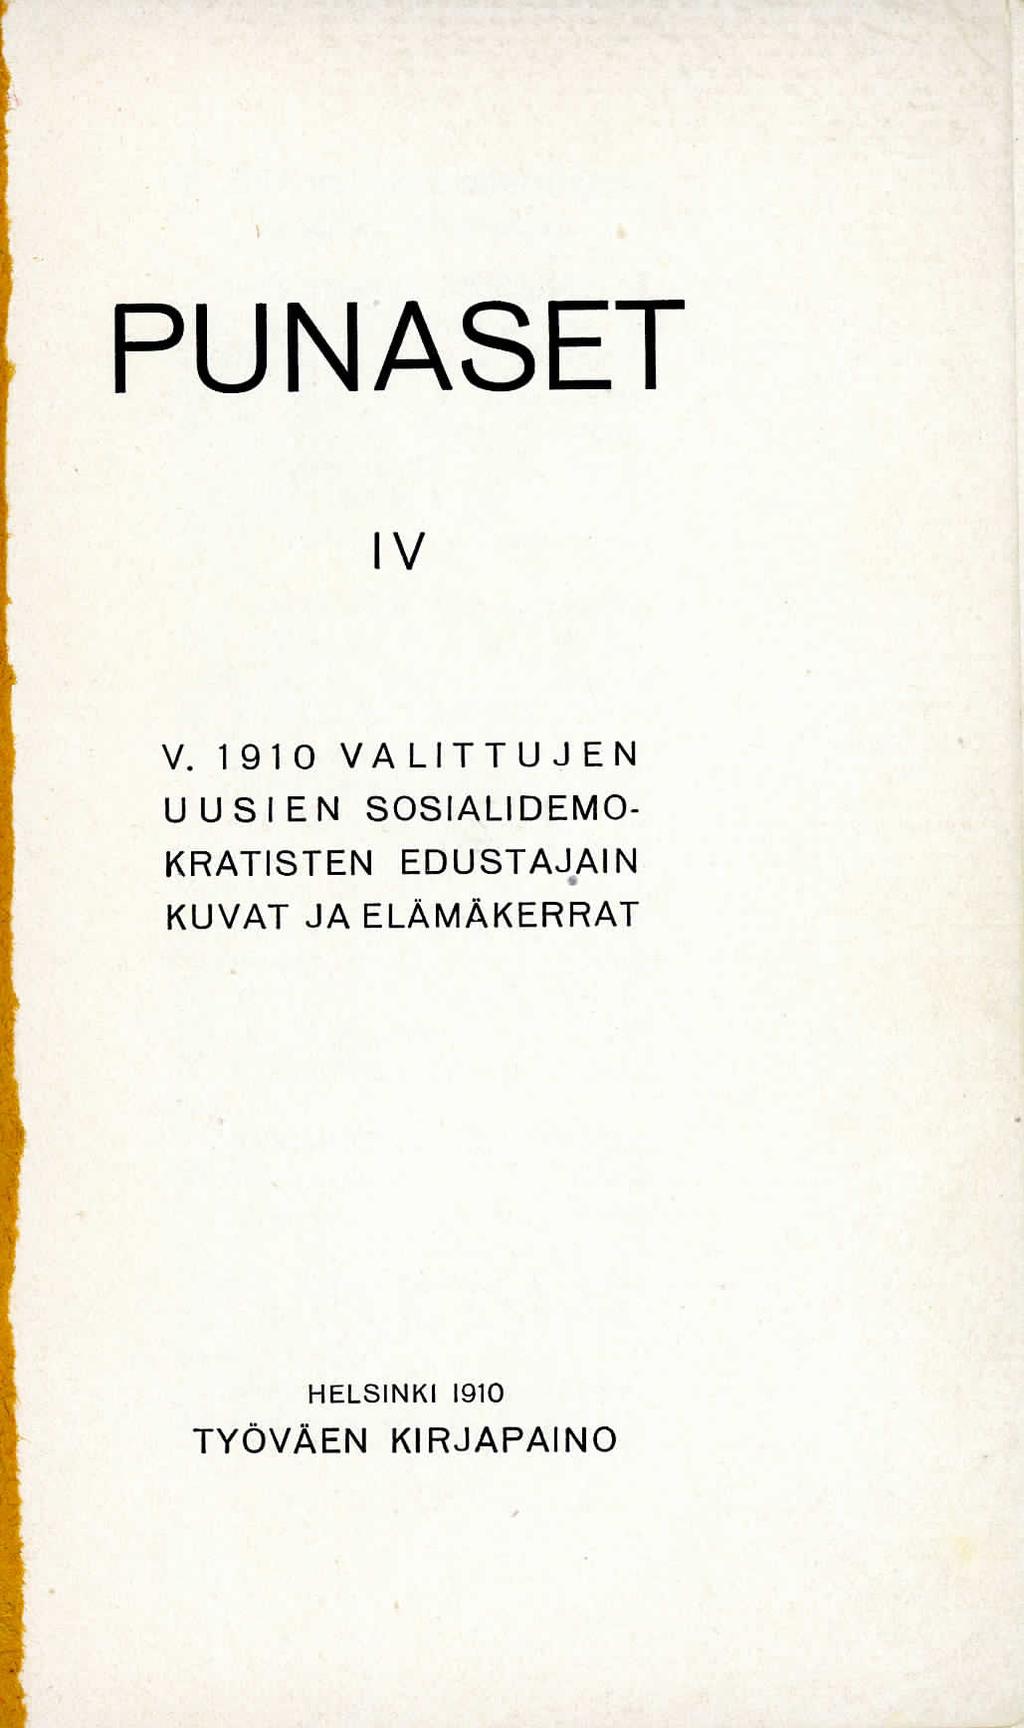 PUNASEl IV V.